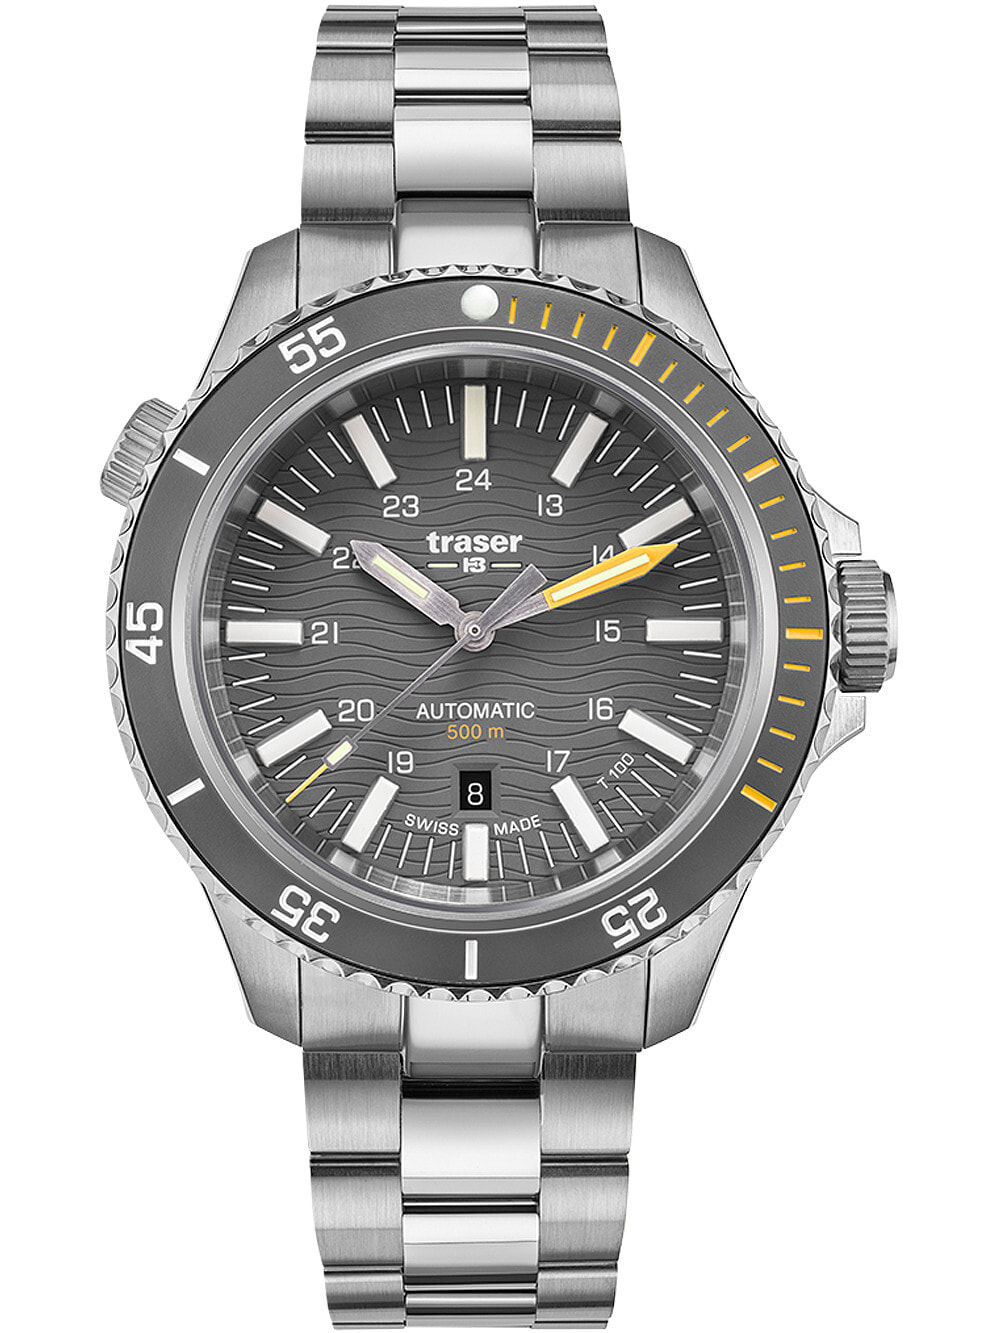 Мужские наручные часы с серебряным браслетом Traser H3 110329 P67 Diver Automatik T100 Grey Special Set 46mm 50ATM